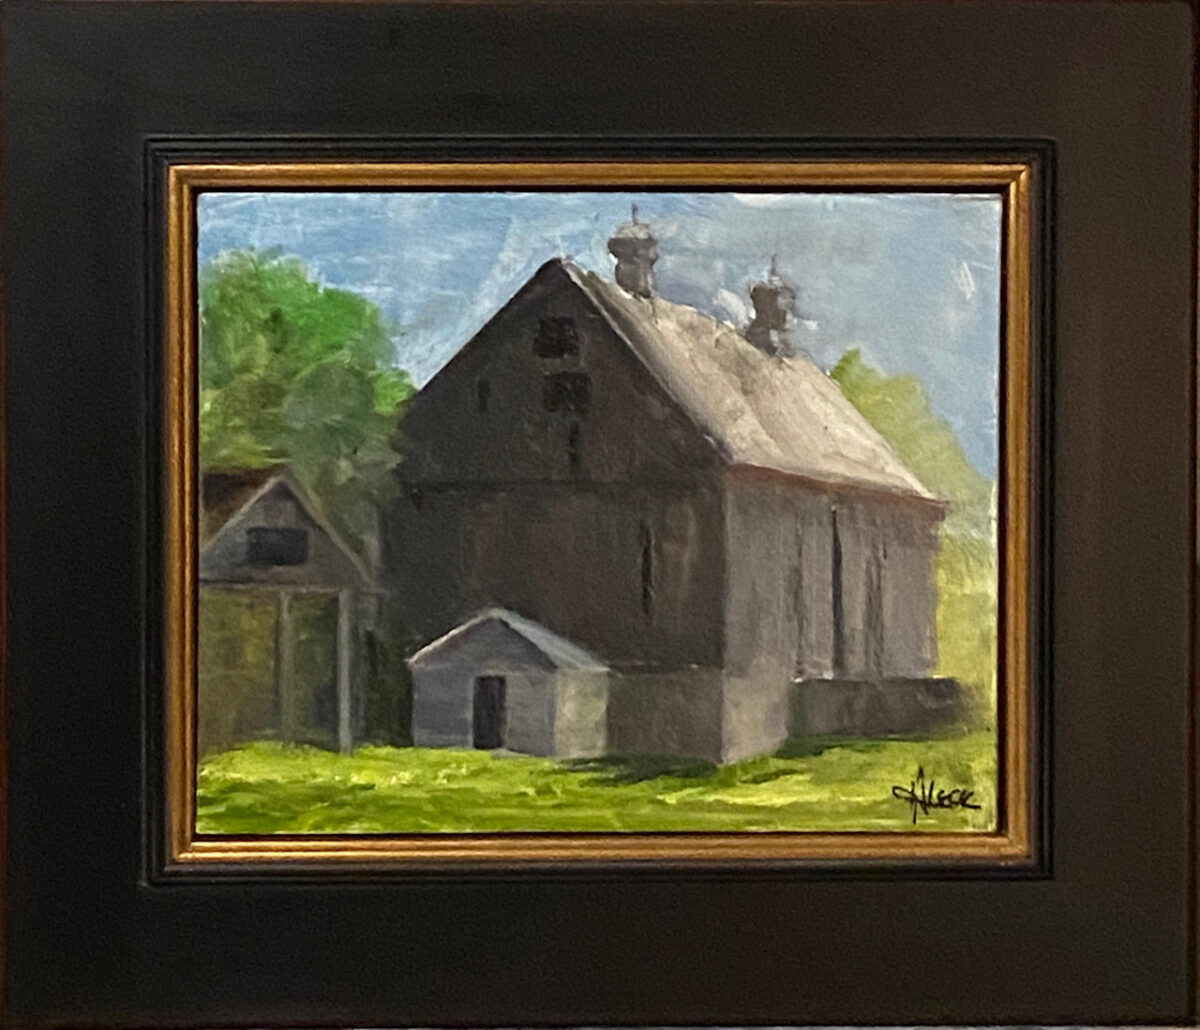 211 - Bloomfield Barn - 8 x 10 - Landscape - $325